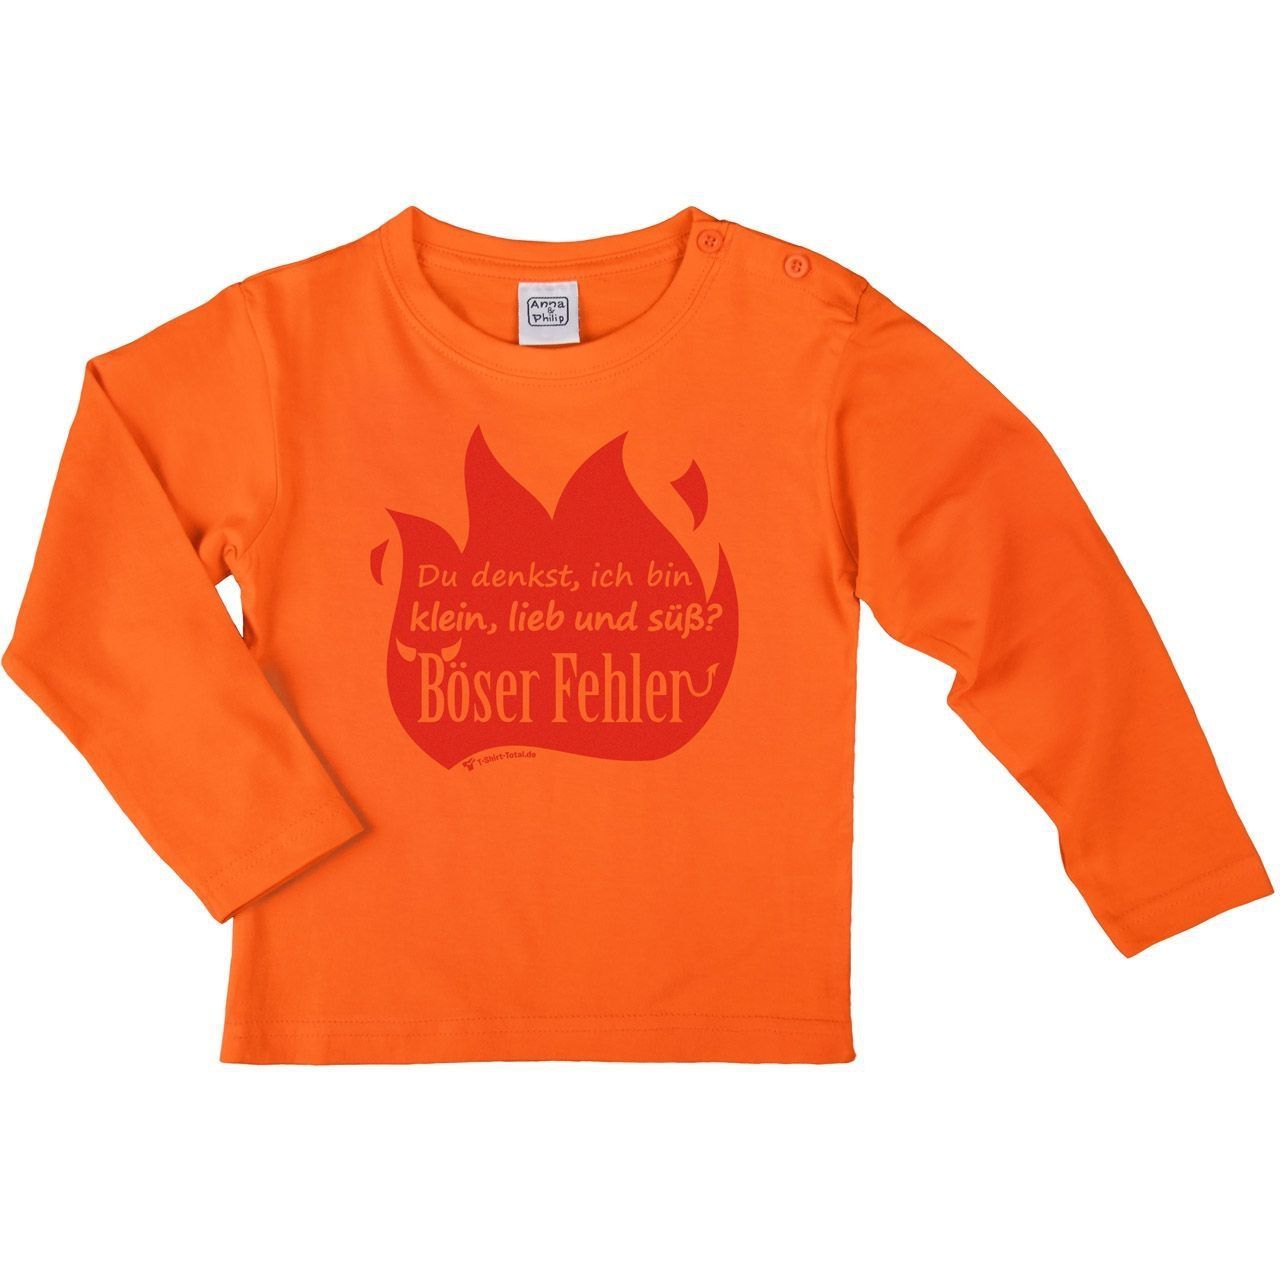 Böser Fehler Kinder Langarm Shirt orange 134 / 140